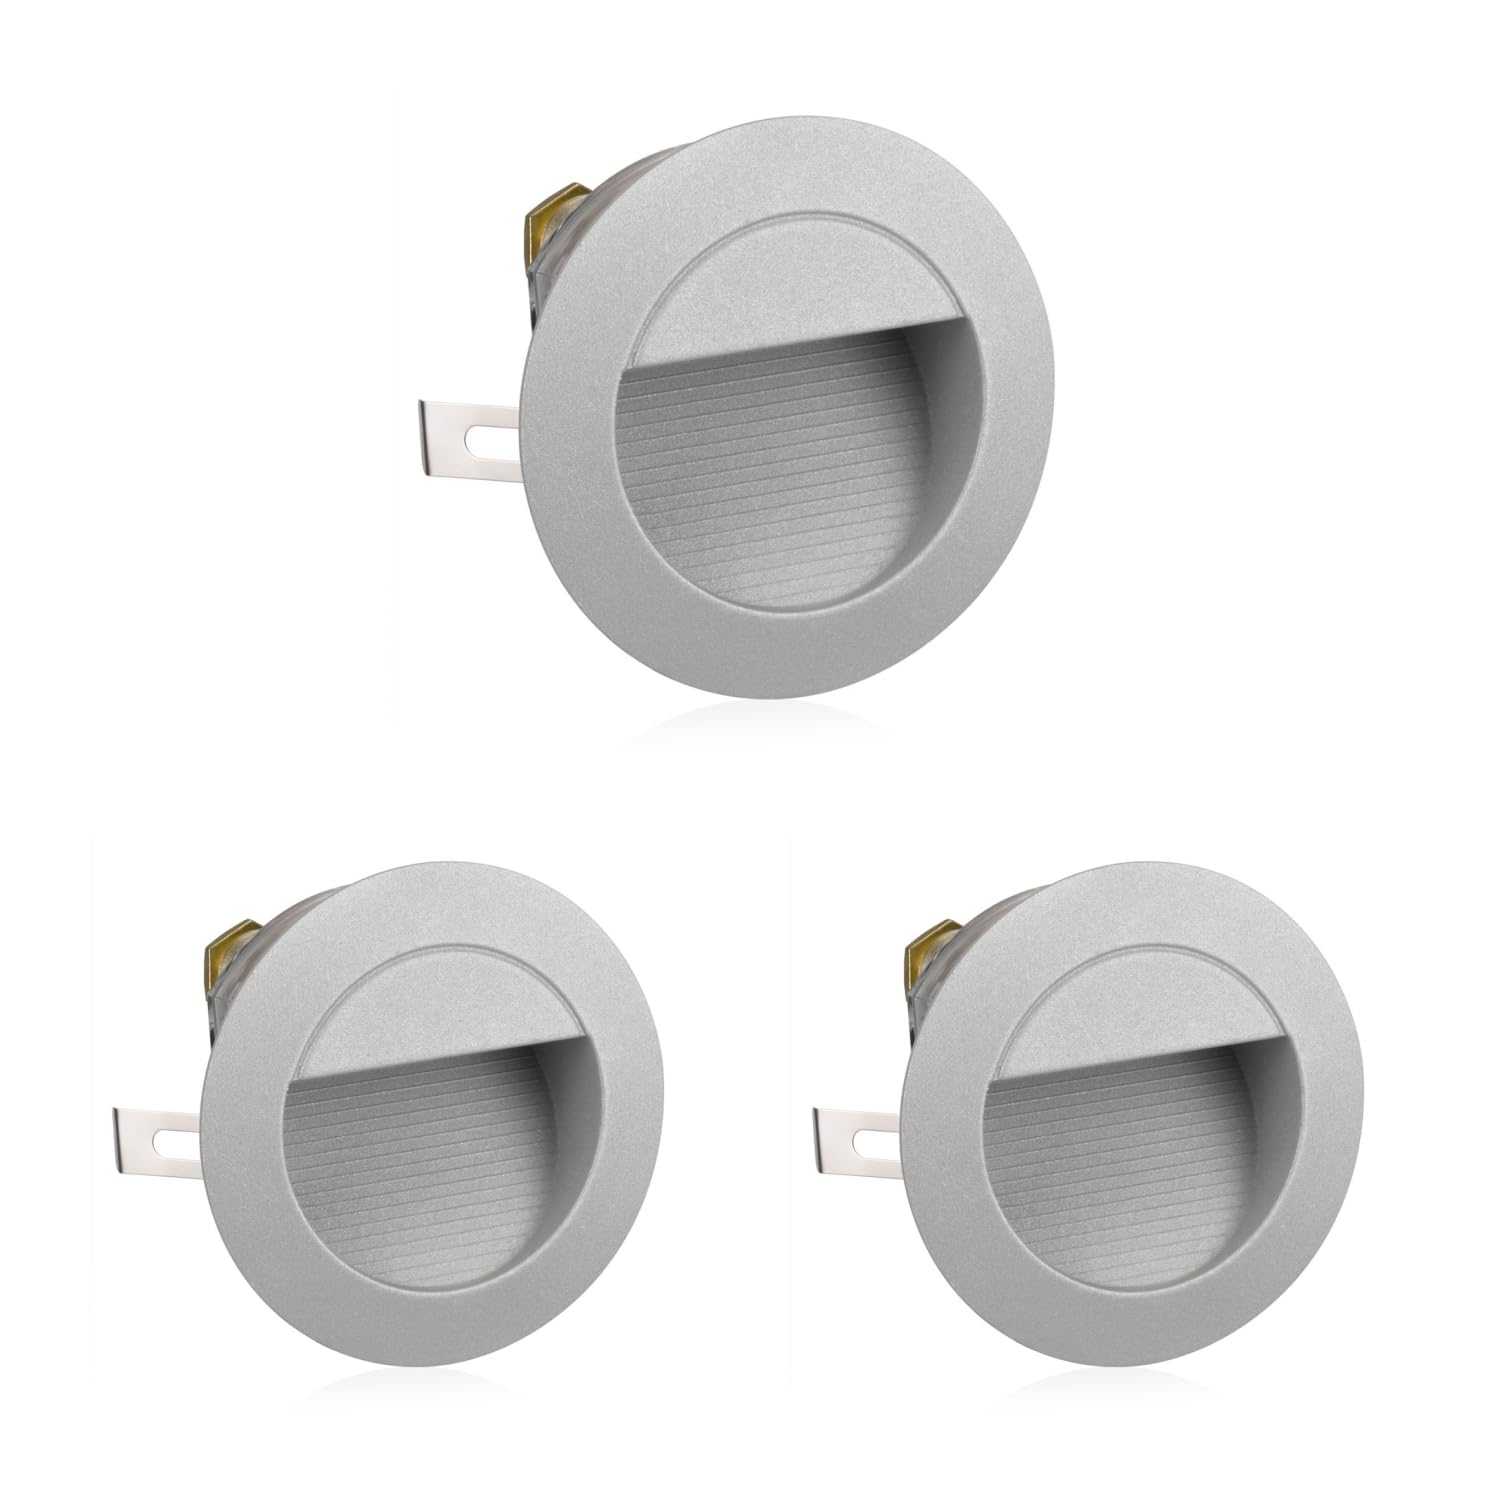 ledscom.de 3 Stück LED Treppenlicht/Wandeinbauleuchte für innen und außen, Downlight, rund, grau, 125mm Ø, warmweiß